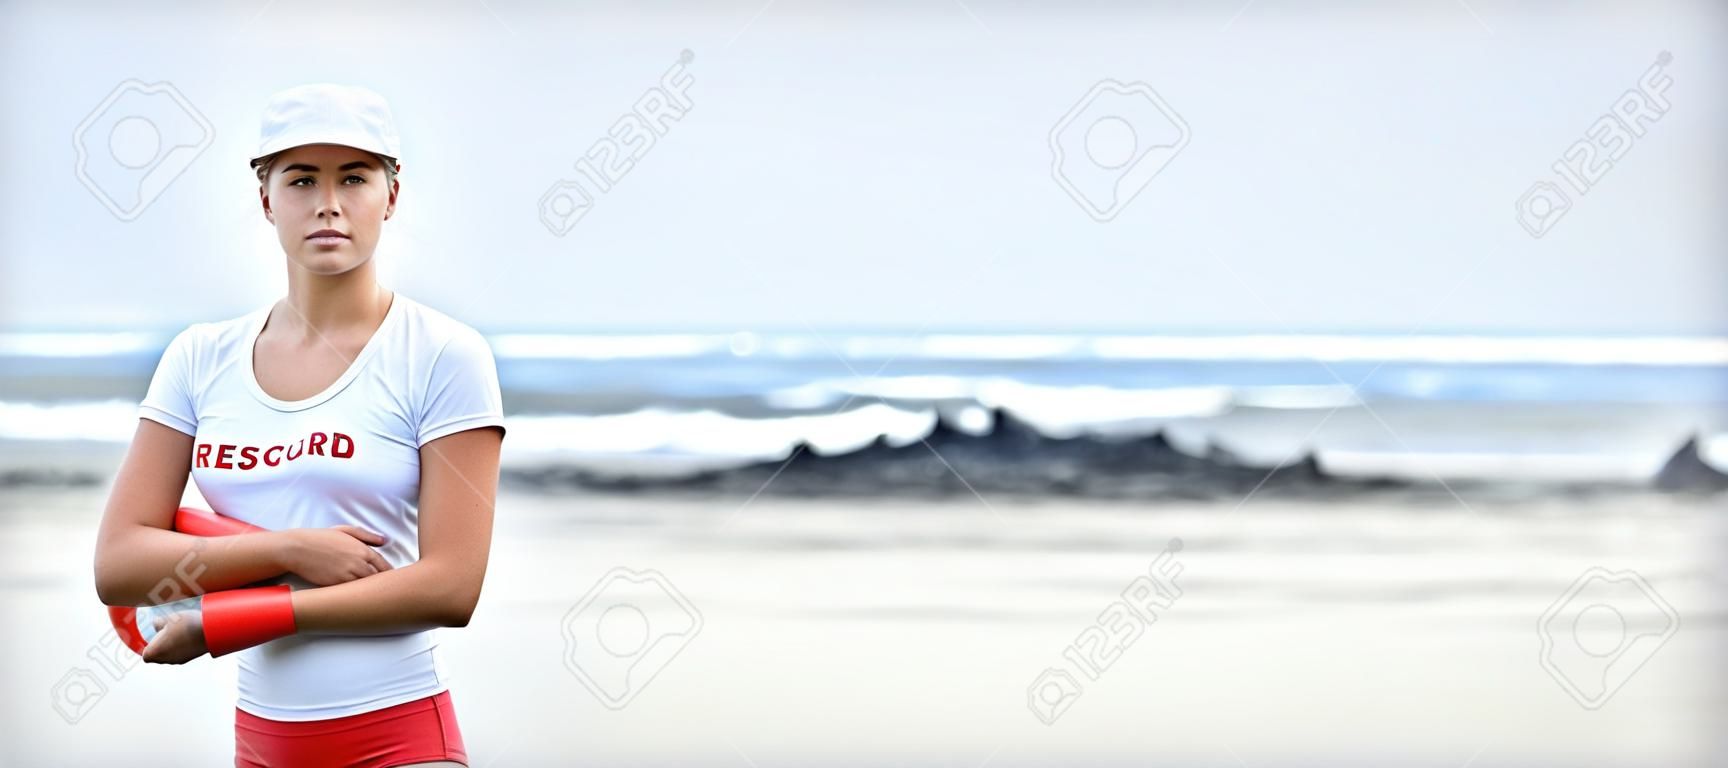 波のビューに対して救助ブイを保持している女性のライフガードの肖像画